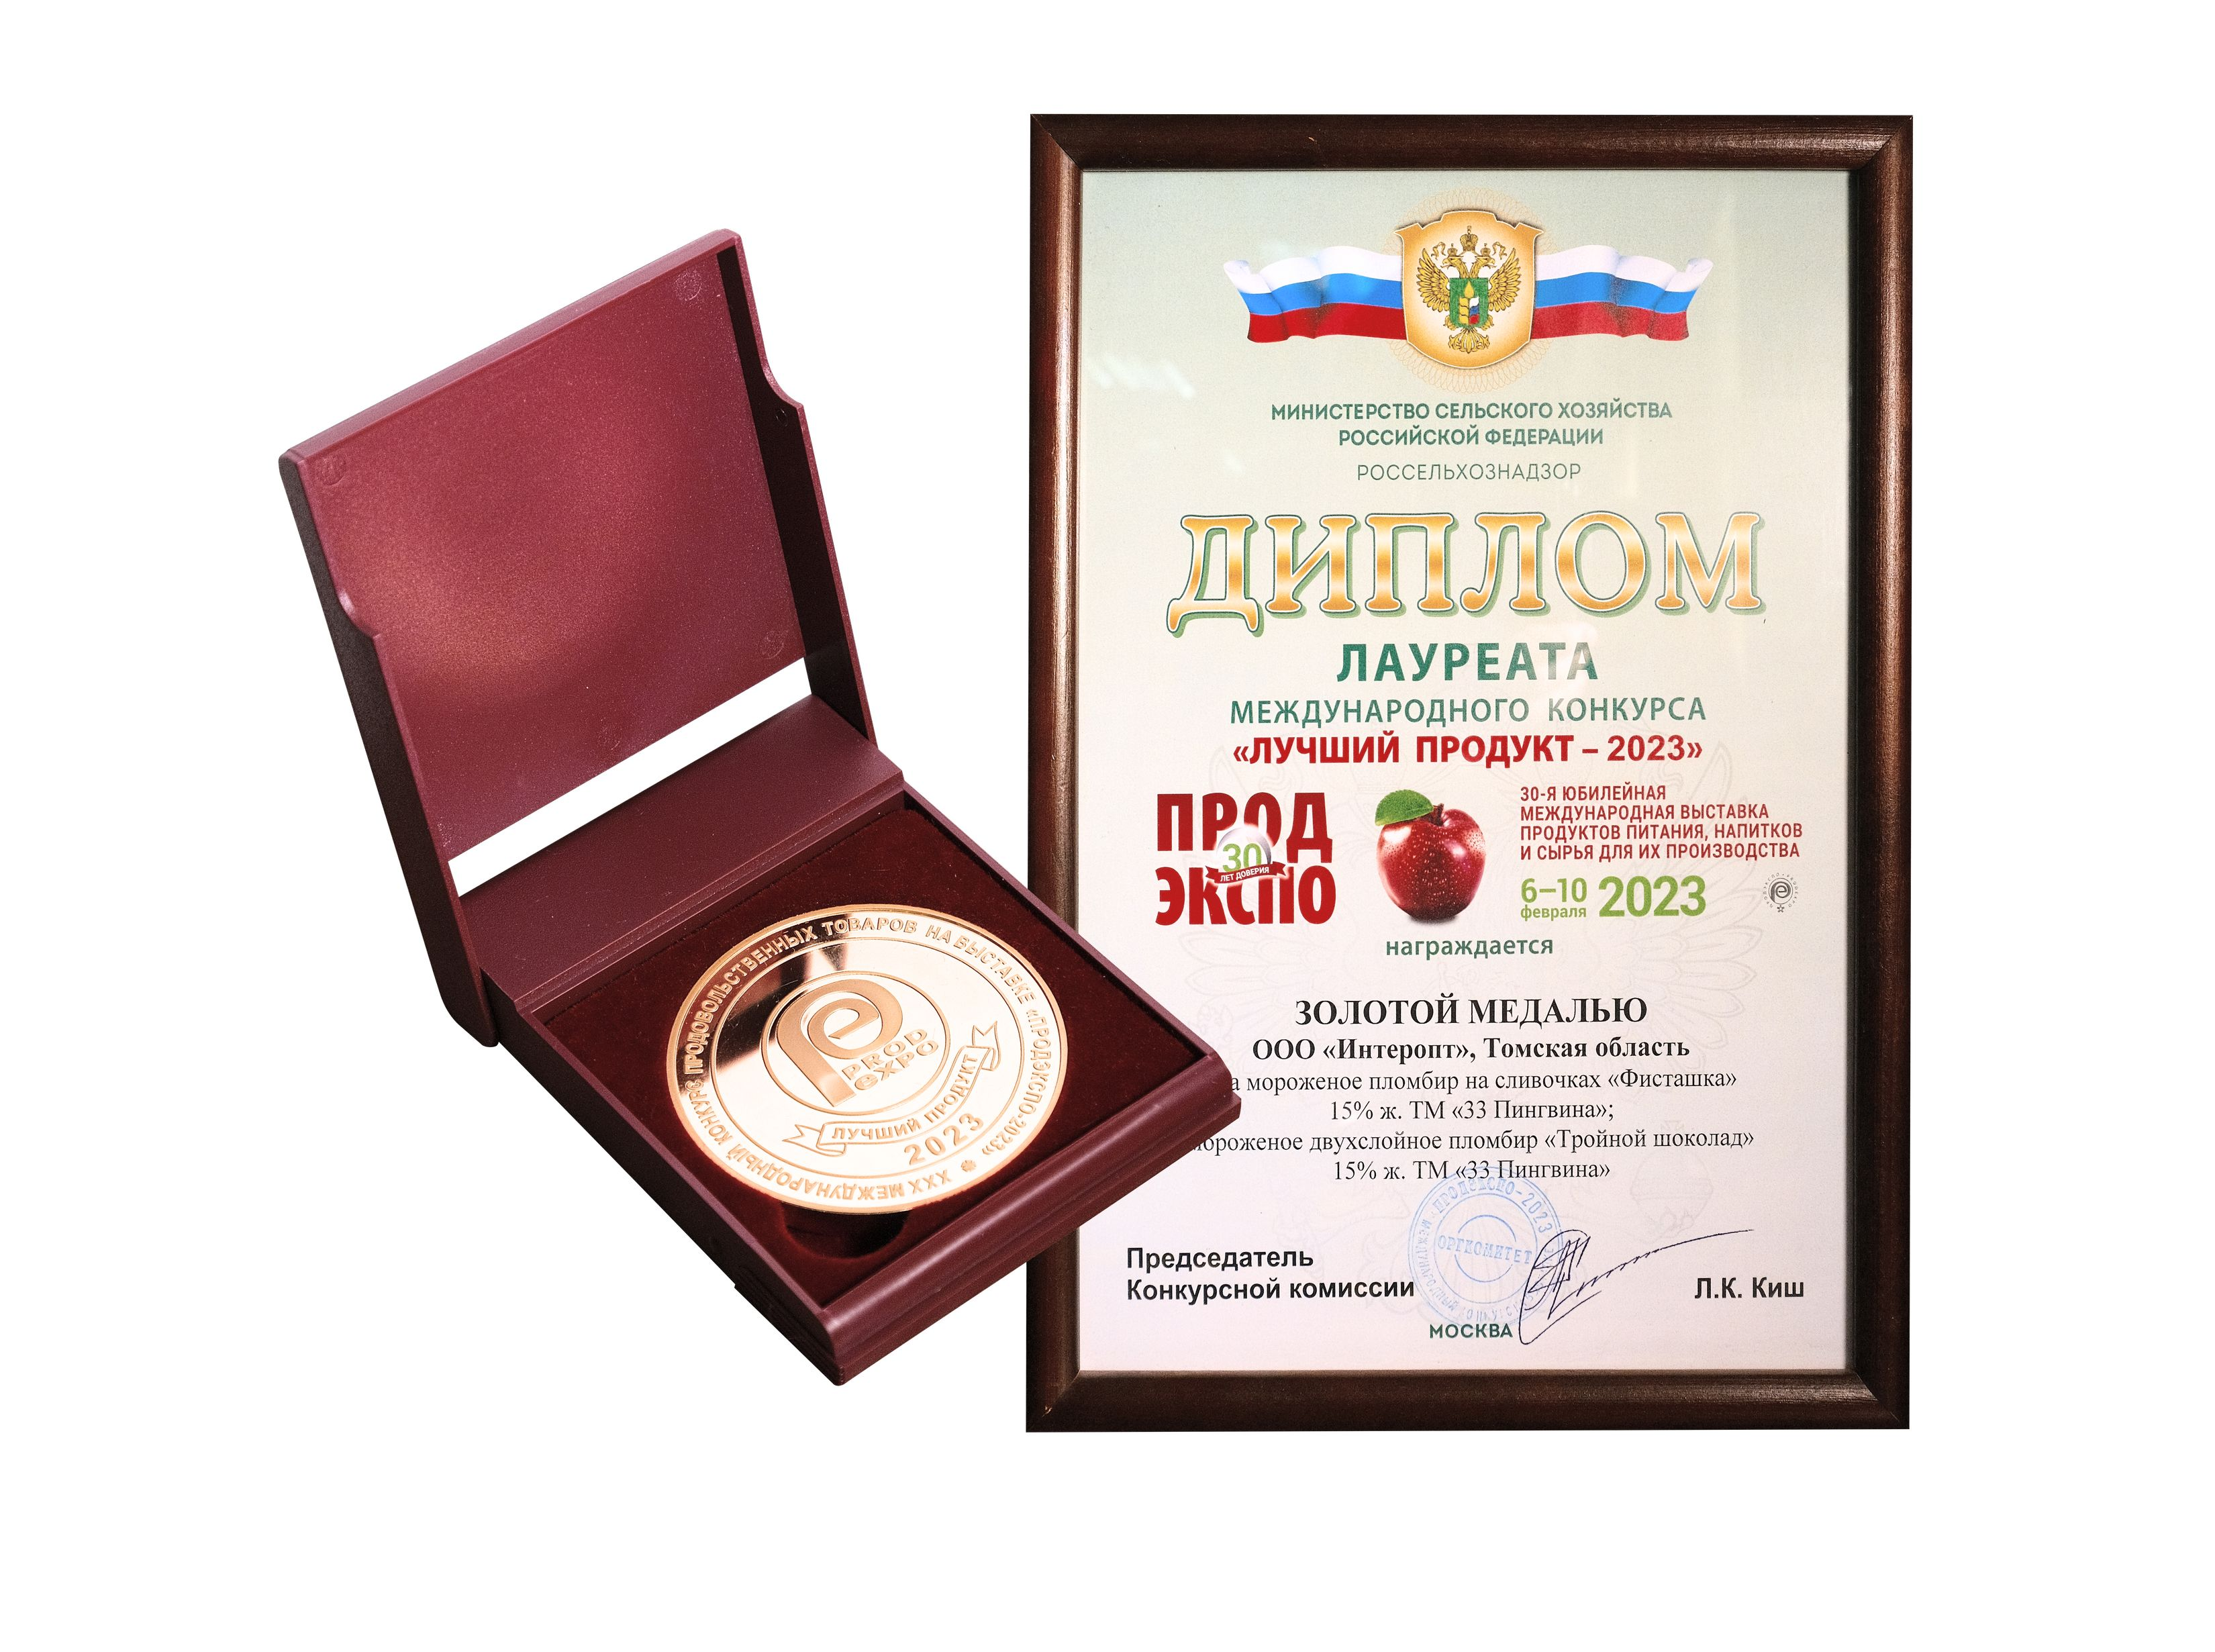 Золотая медаль Международного конкурса «Лучший продукт - 2023»